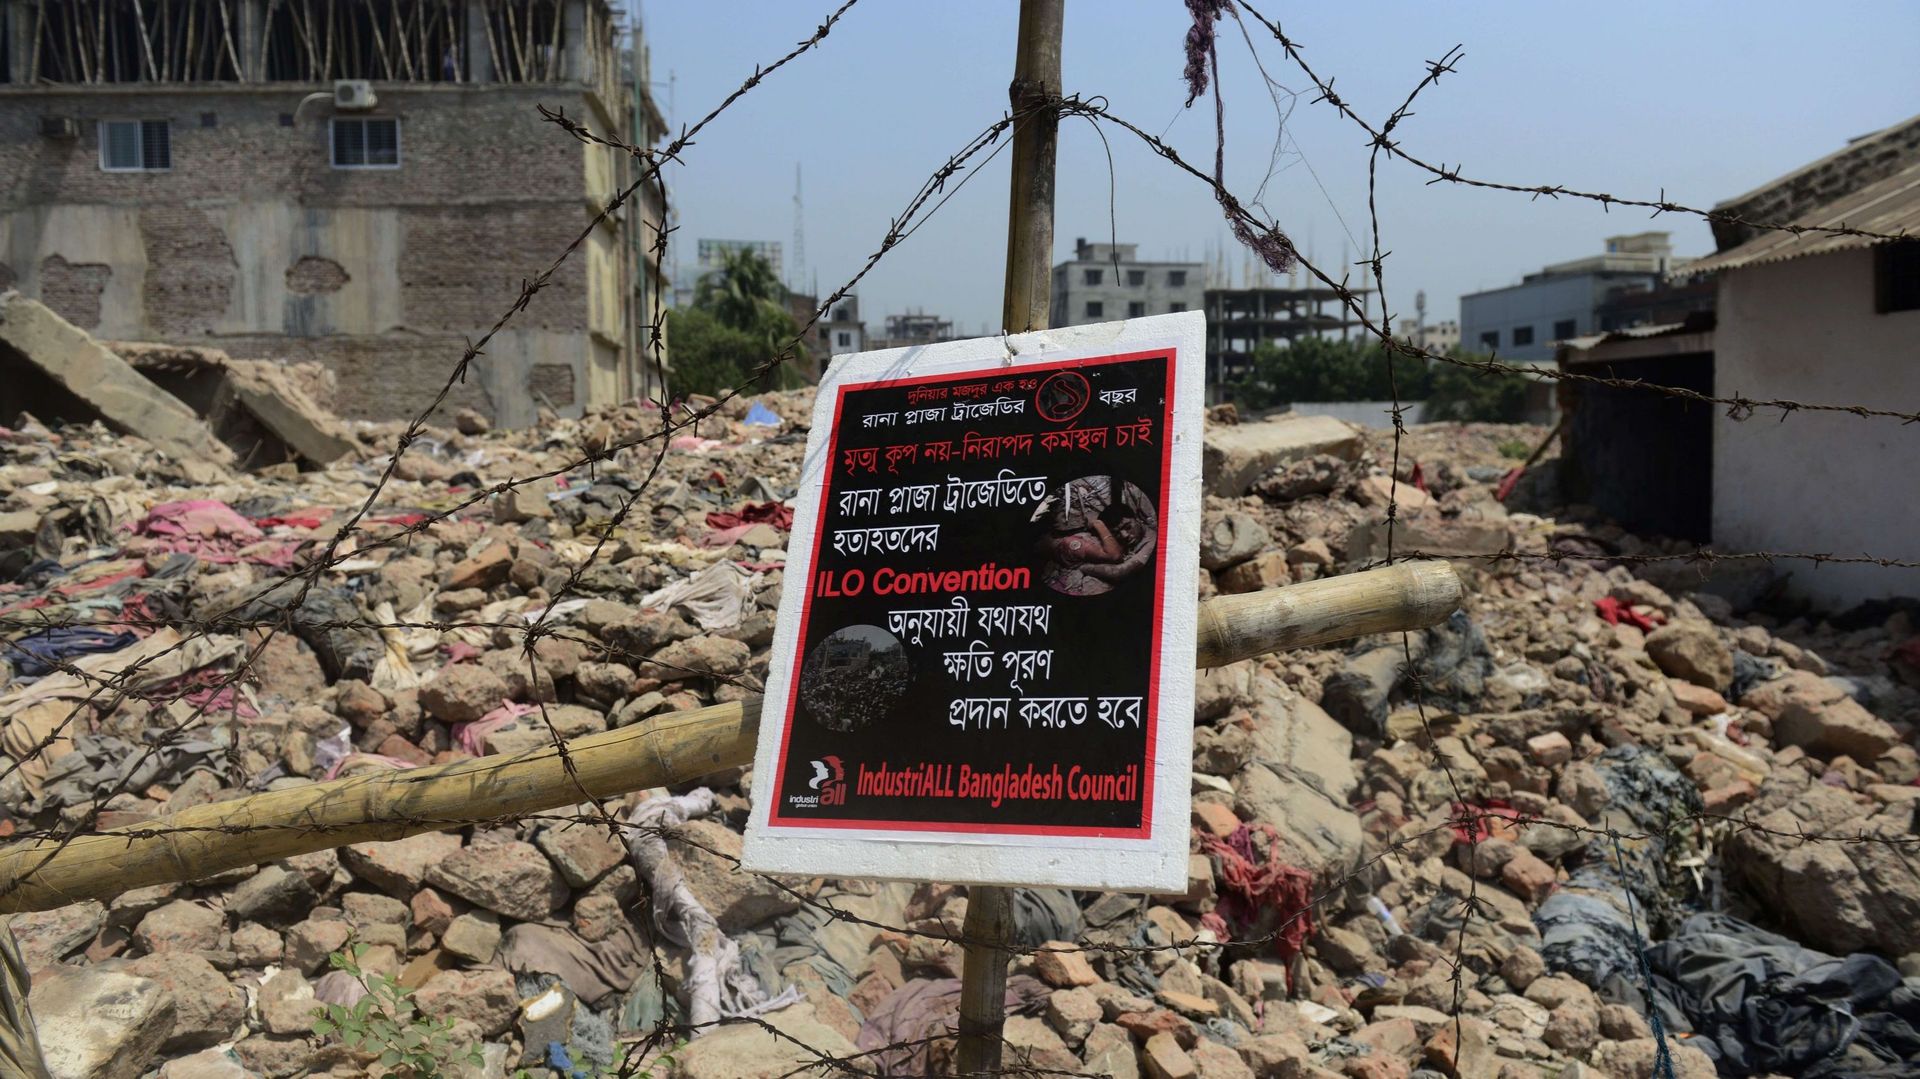 bangladesh-des-milliers-de-manquements-dans-les-ateliers-textile